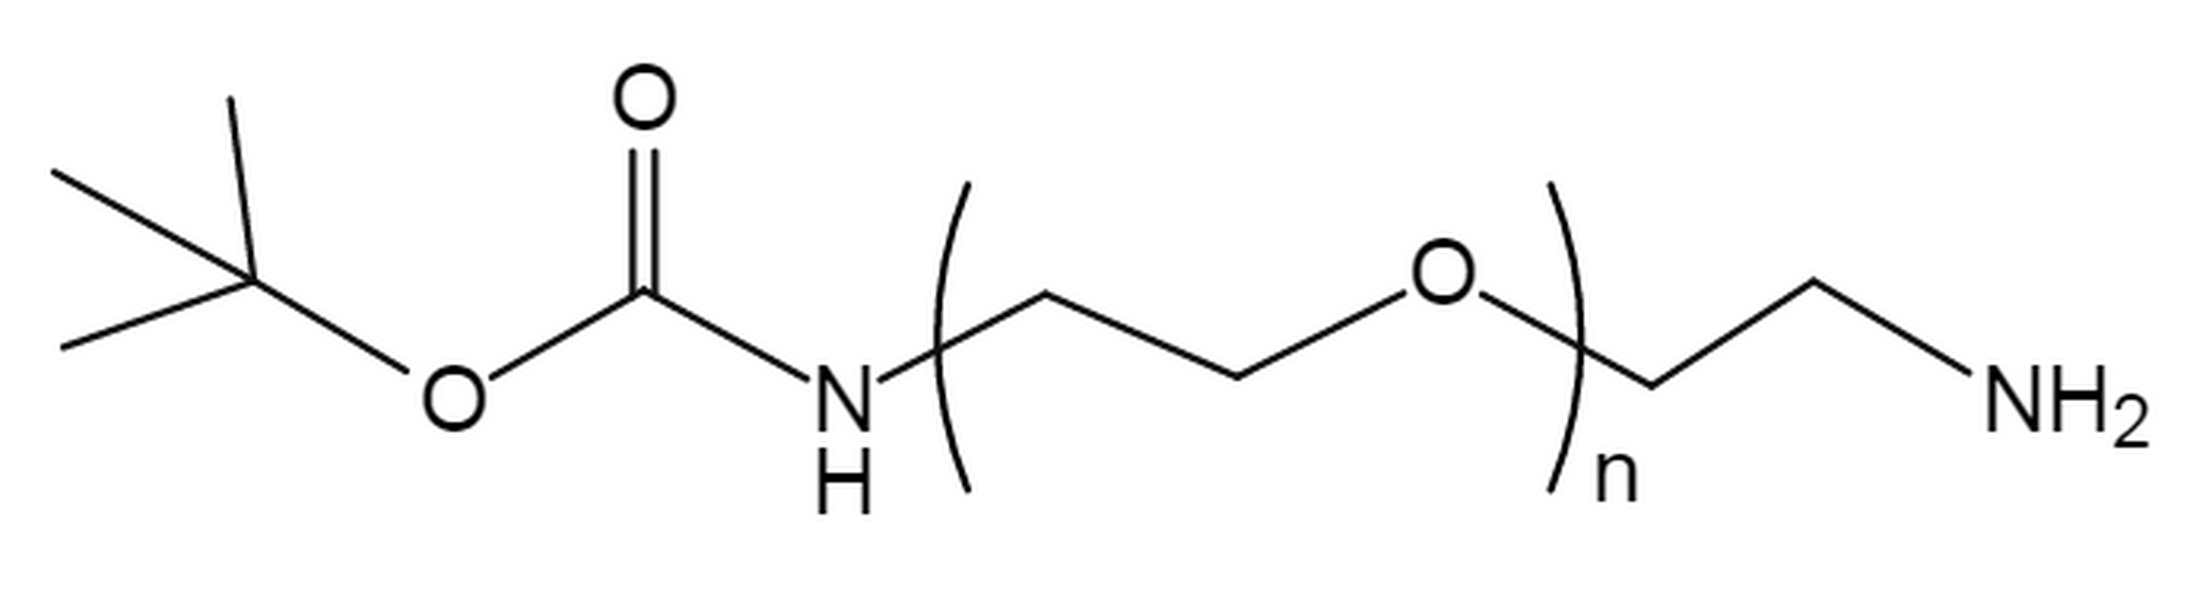 t-Boc-N-amido-PEG-amine, MW 7.5K